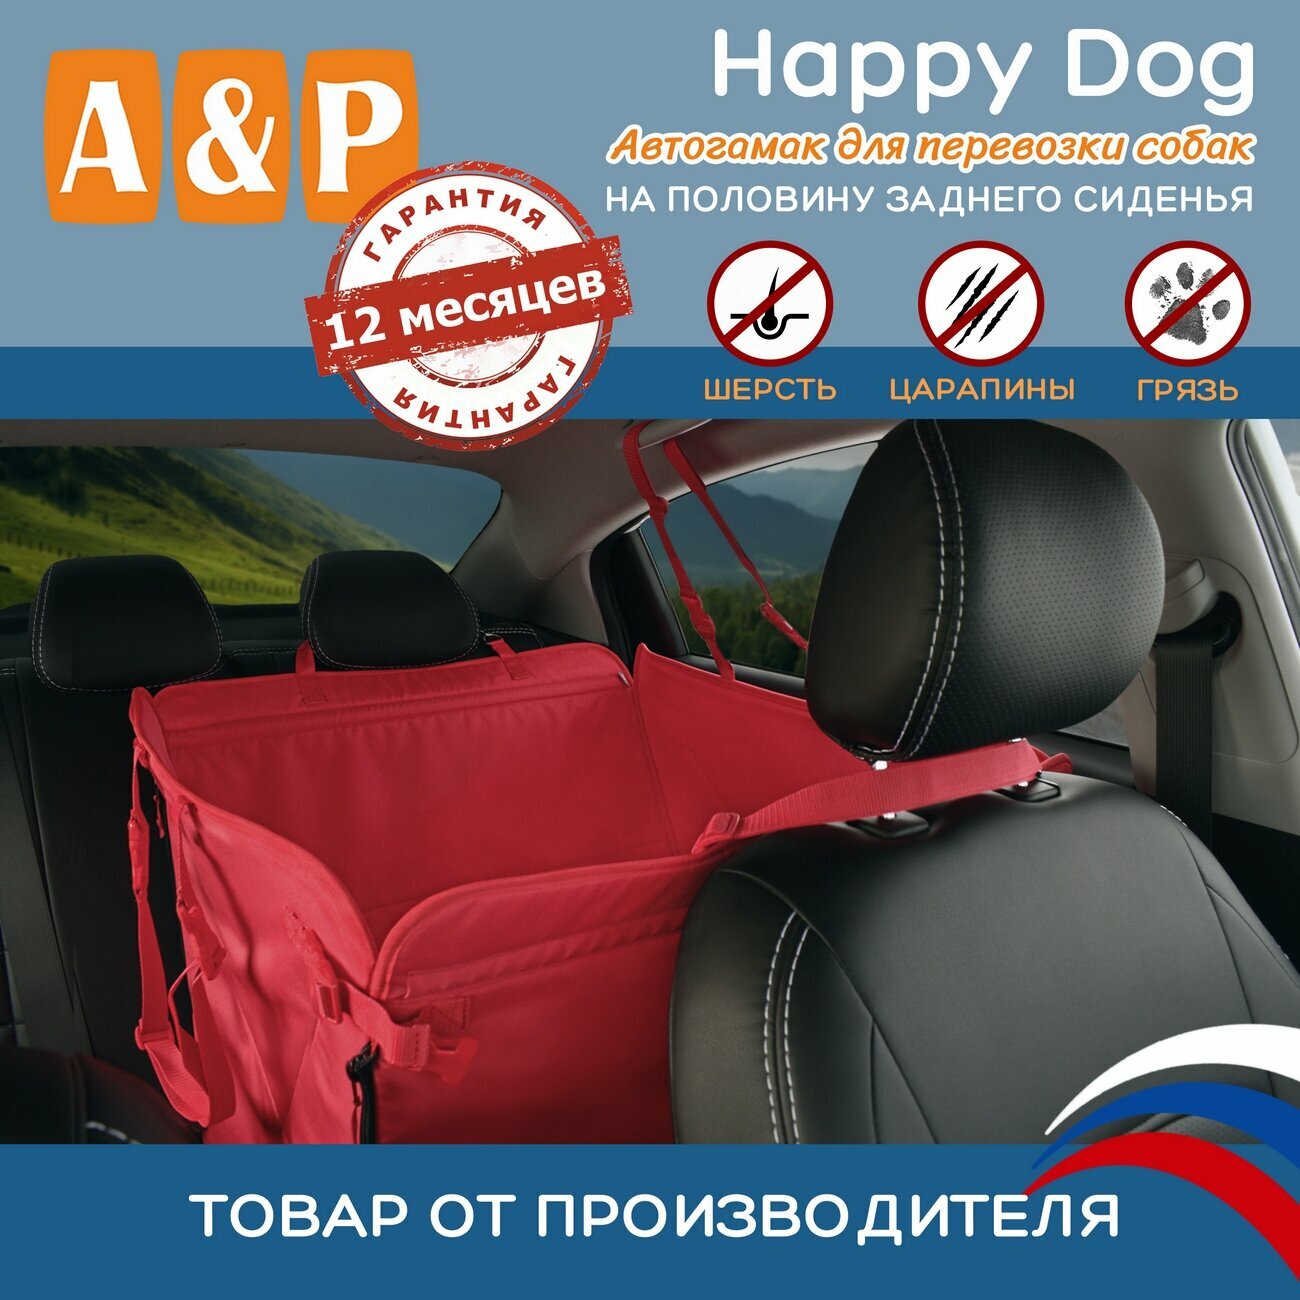 Автогамак Happy Dog (Хэппи Дог). На половину сиденья. Цвет: красный.